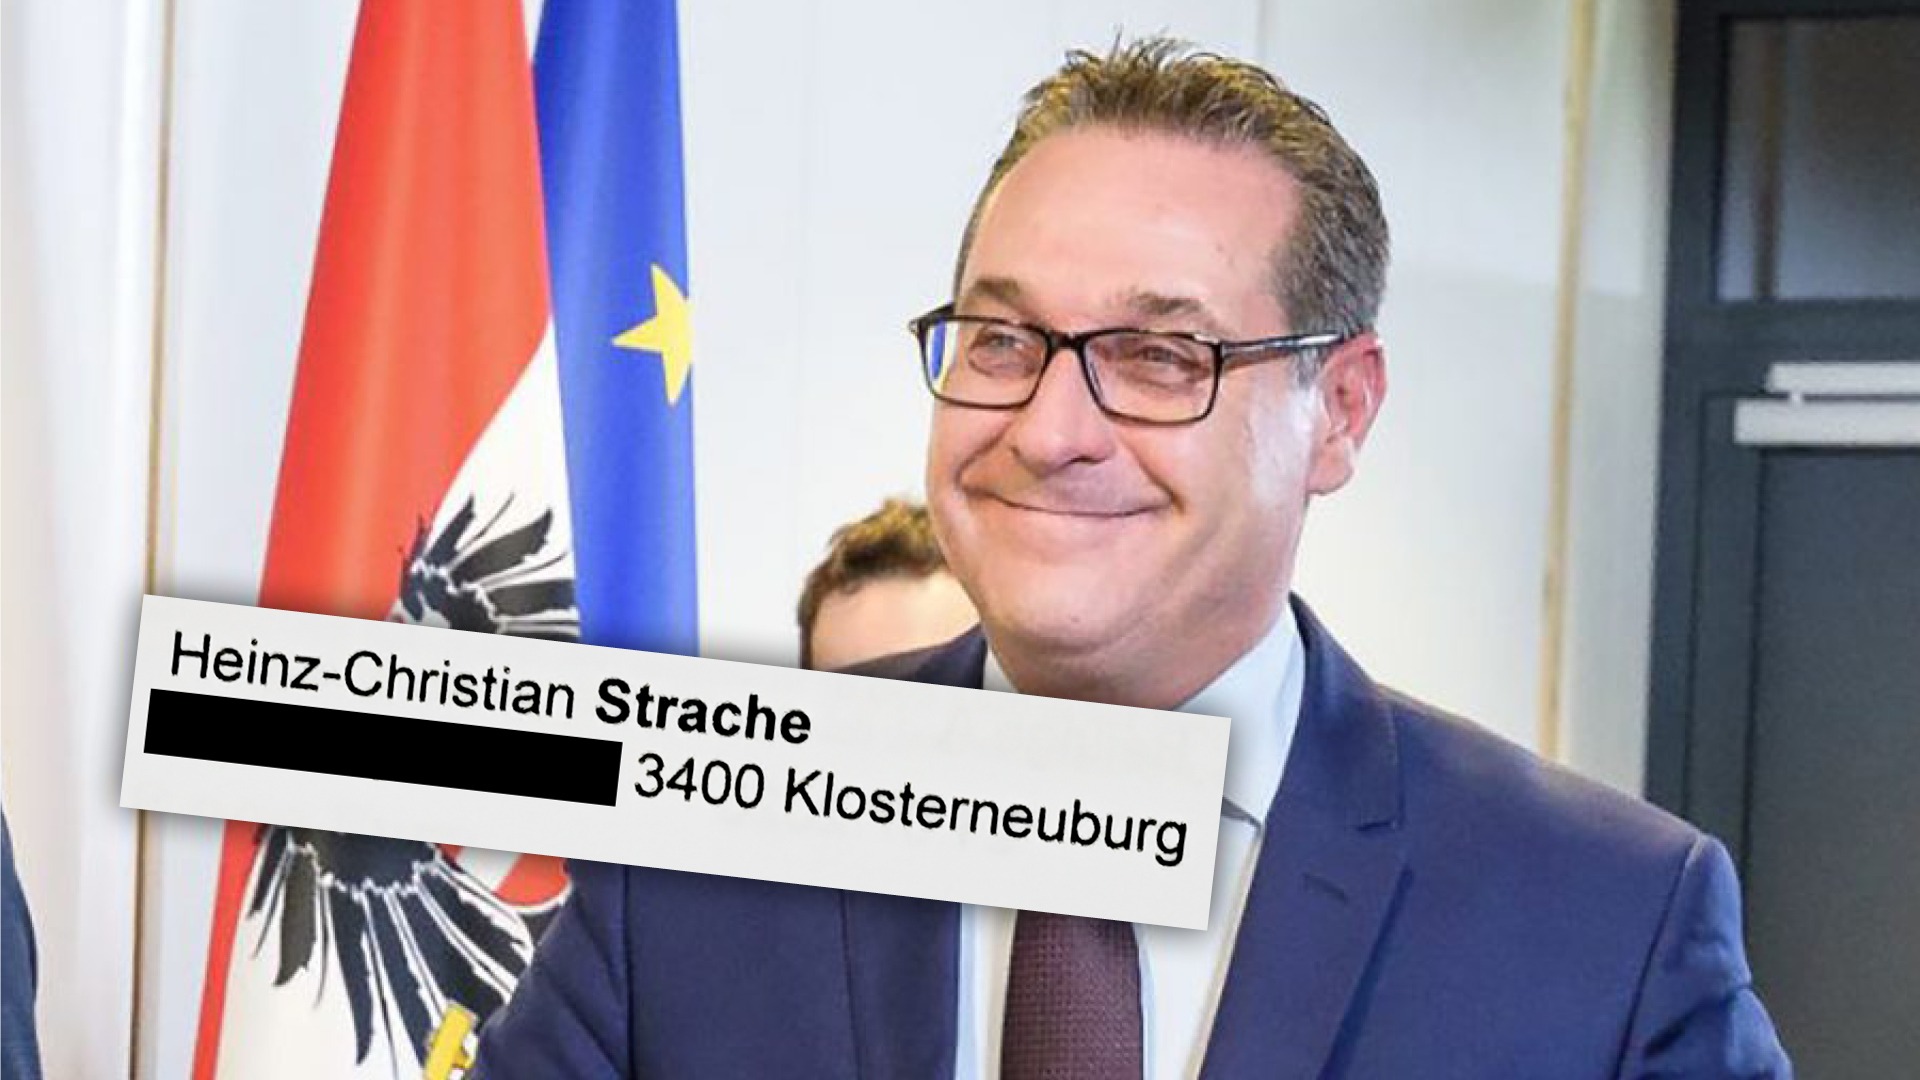 Strache-Wohnsitz: Strache klagt Kontrast – von seiner Adresse in Klosterneuburg